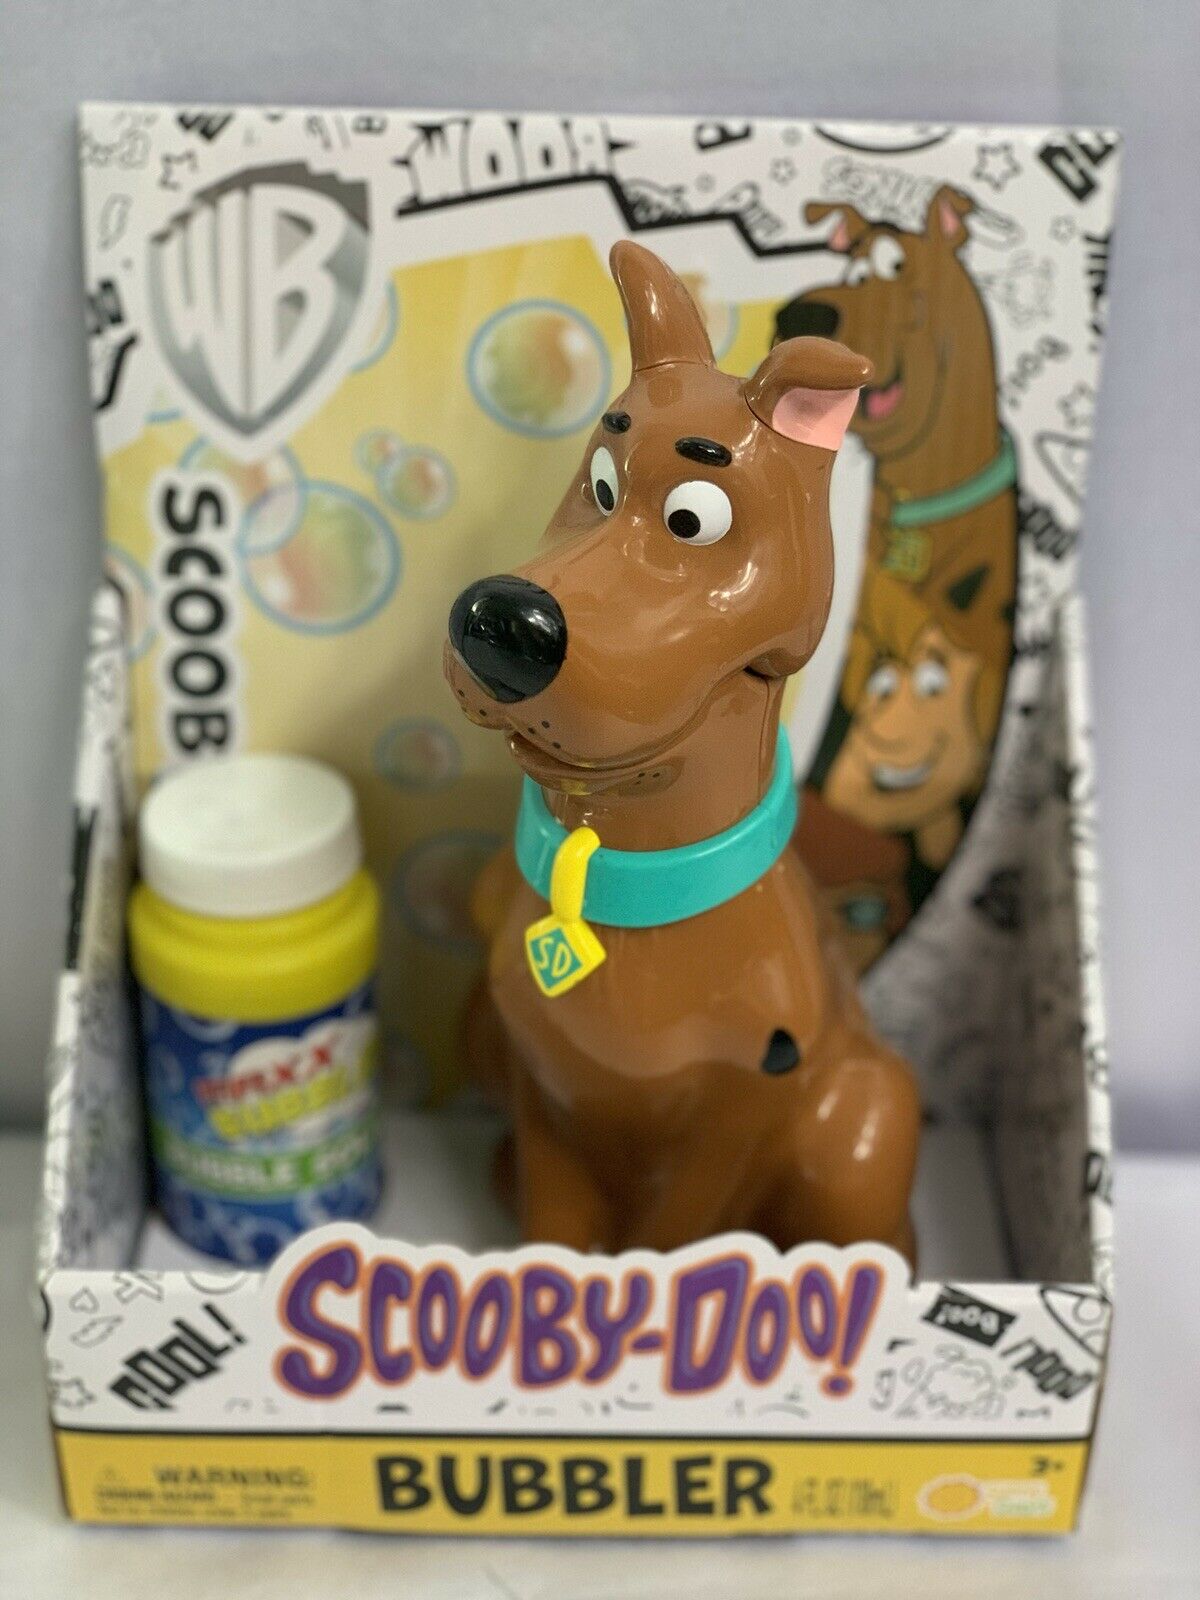 Scooby-Doo Bubbler Toy Bubble Machine